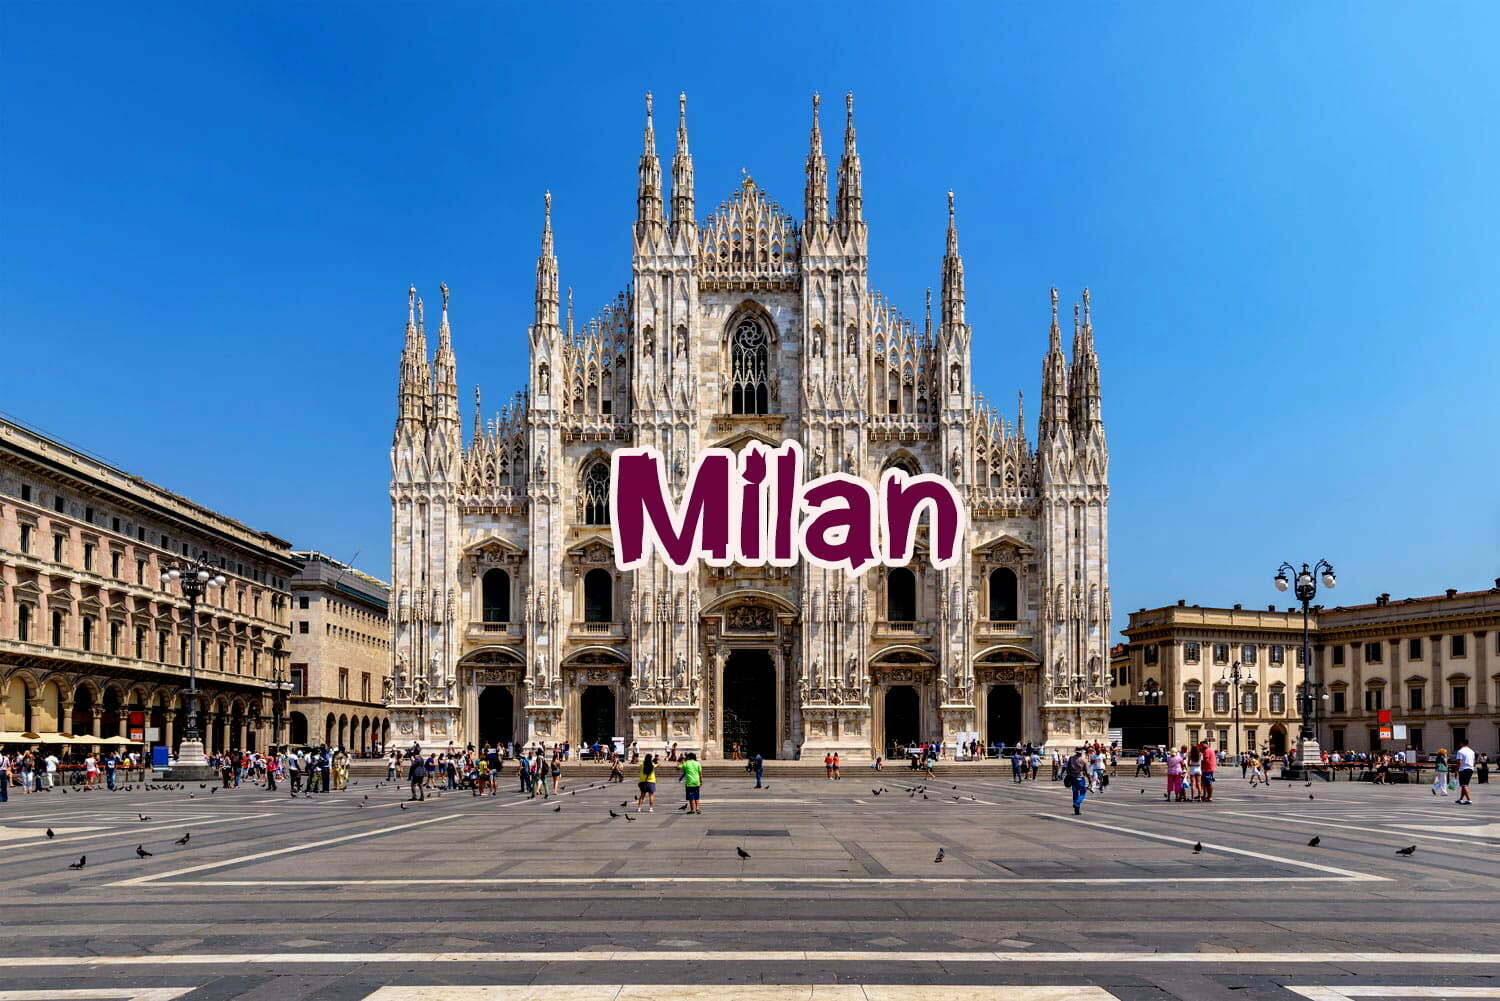 เที่ยวมิลาน Milan เมืองแฟชั่นแห่งอิตาลี